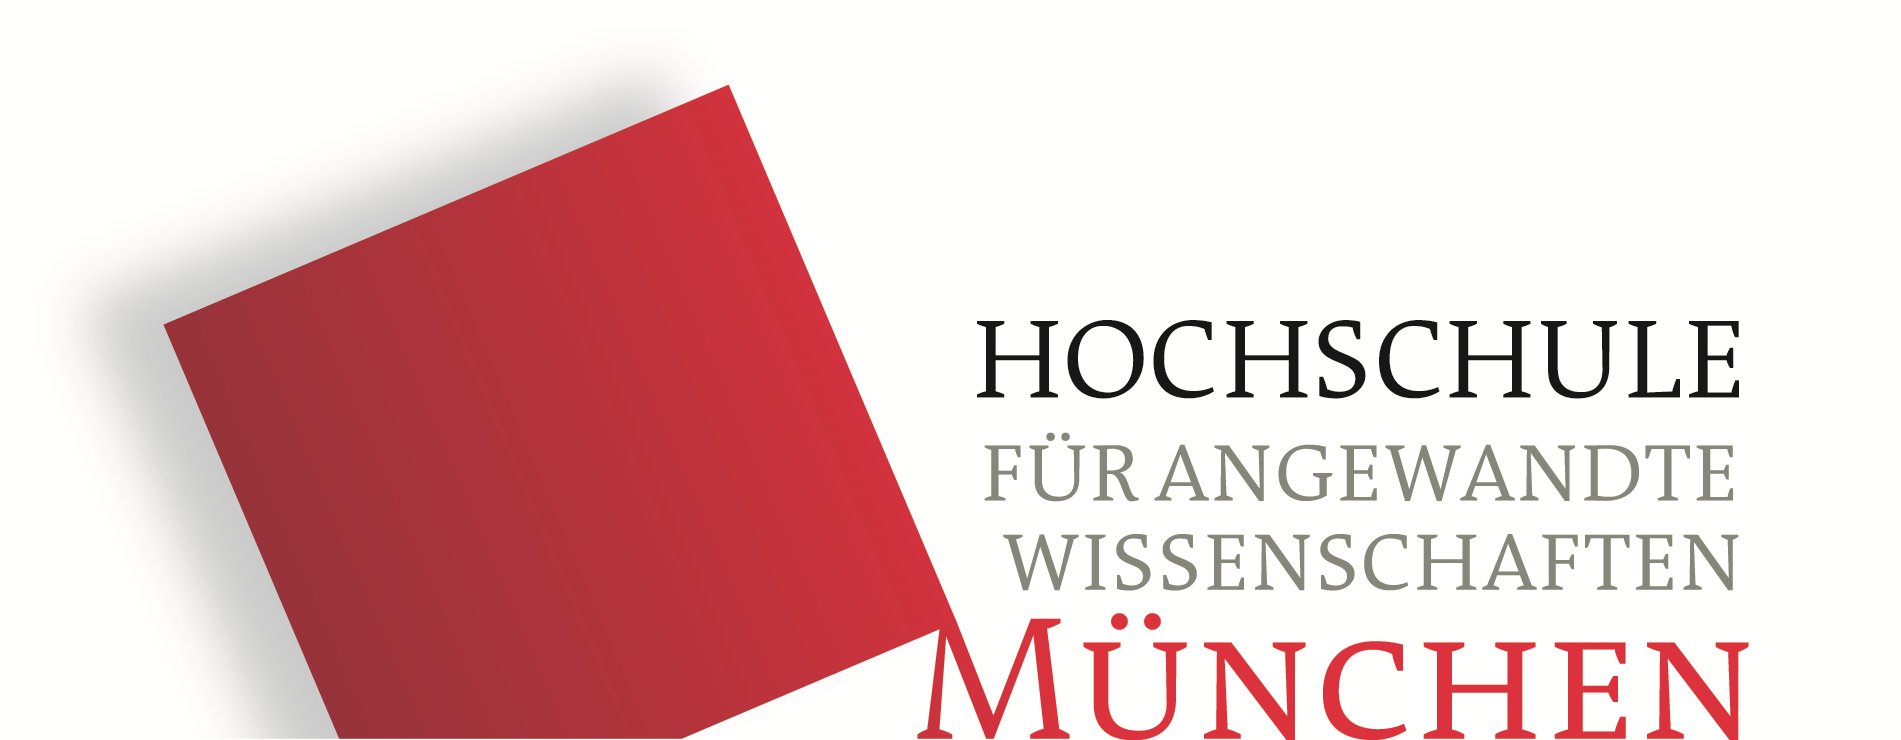 Logo der Hochschule München